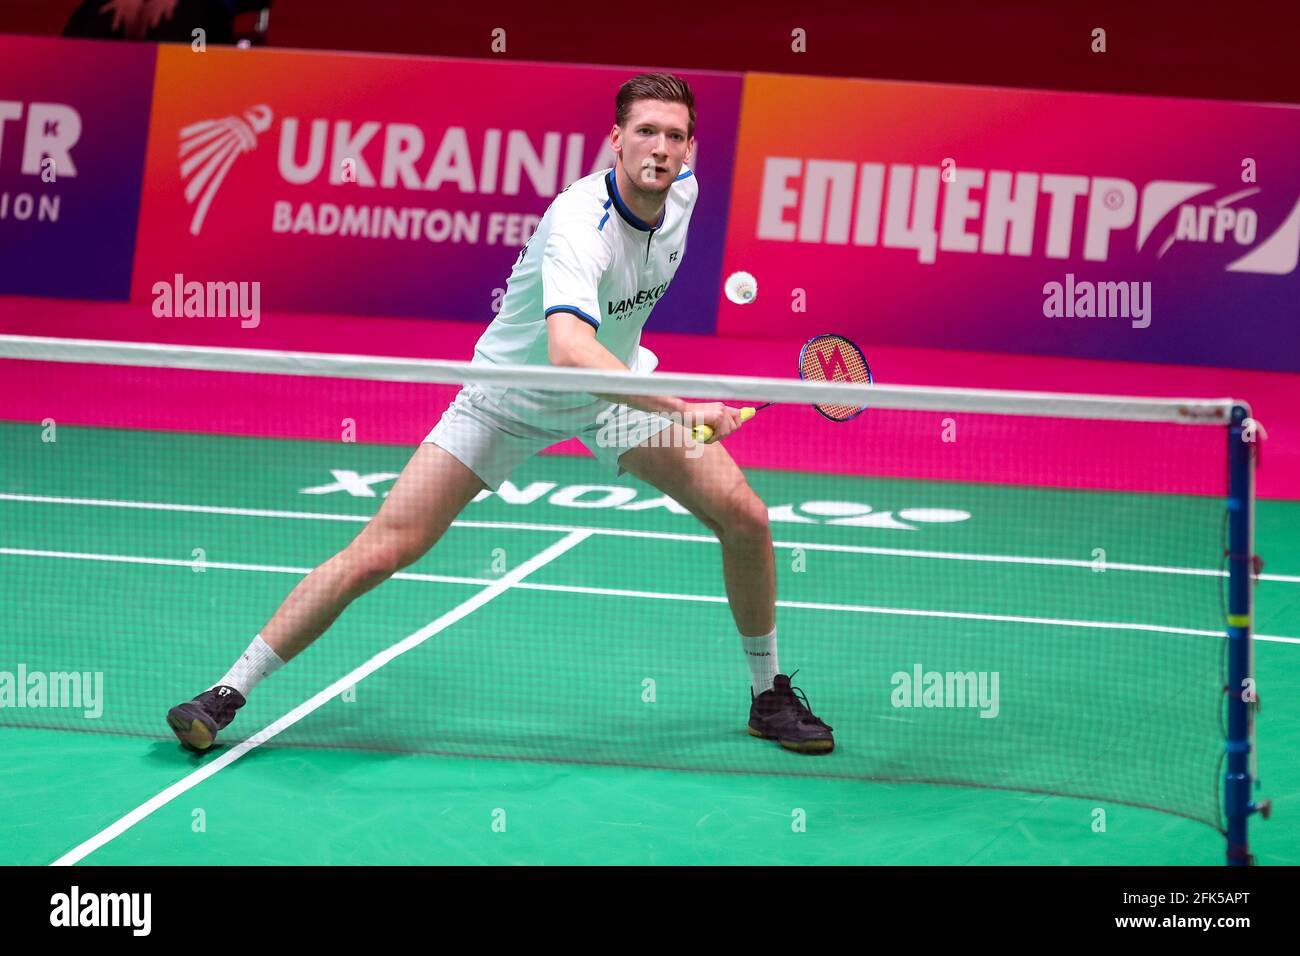 KIEV, UKRAINE - 27 AVRIL : Joran Kweekel pendant le 1er jour des 2021 championnats européens de badminton au Palais des sports le 27 avril 2021 à Kiev, Ukraine Banque D'Images